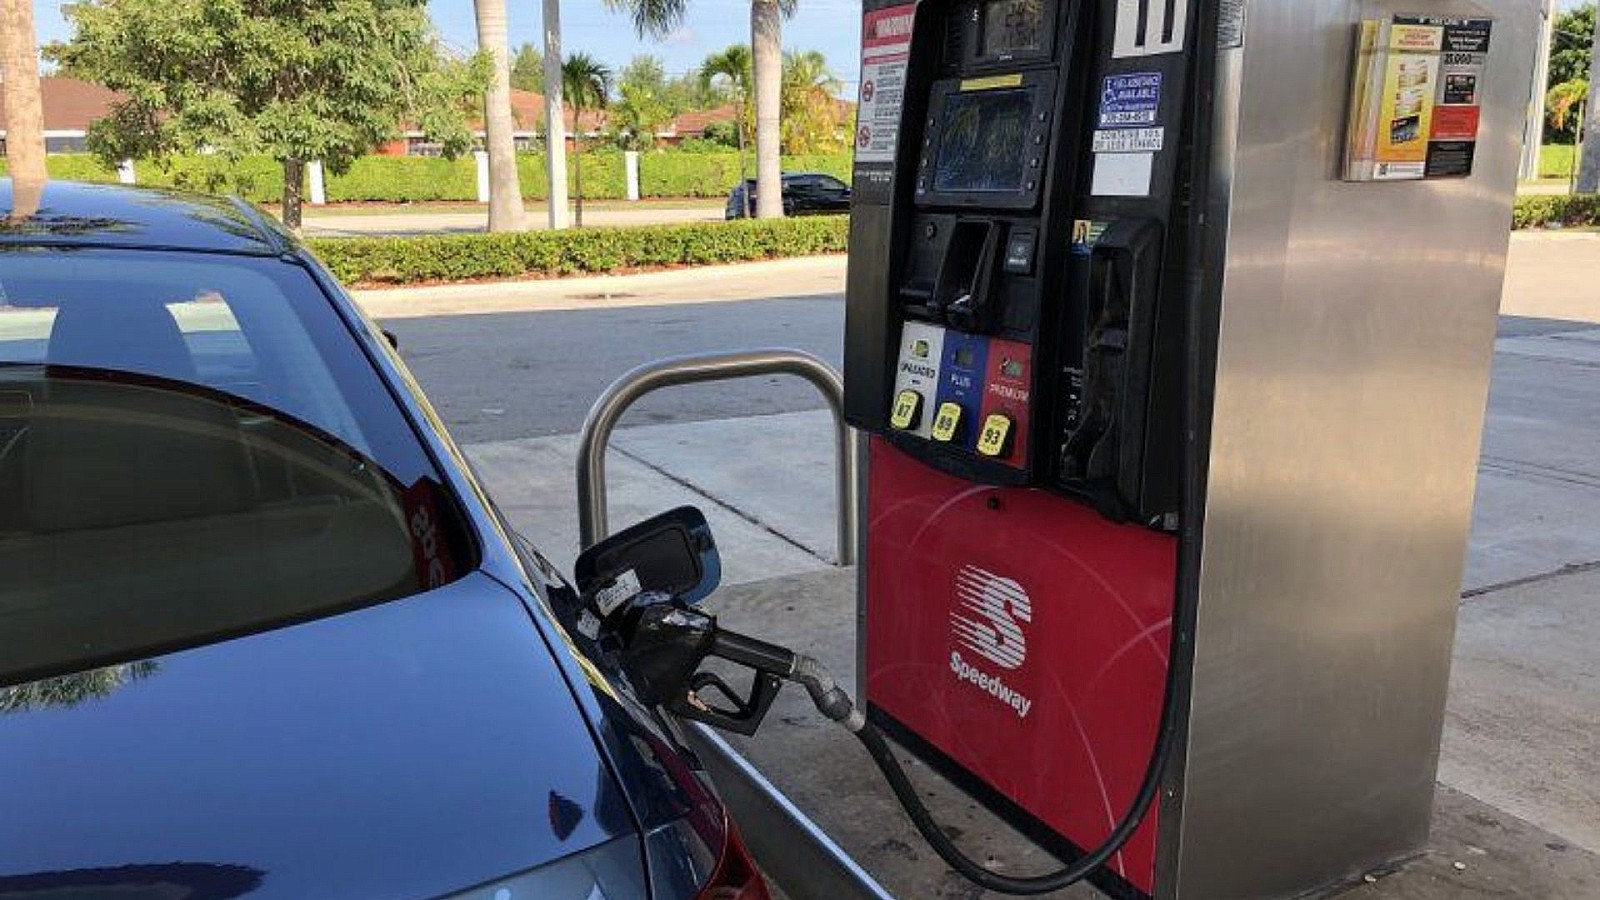 Preço da gasolina dispara na Flórida e pode chegar a US $ 5 por galão neste verão